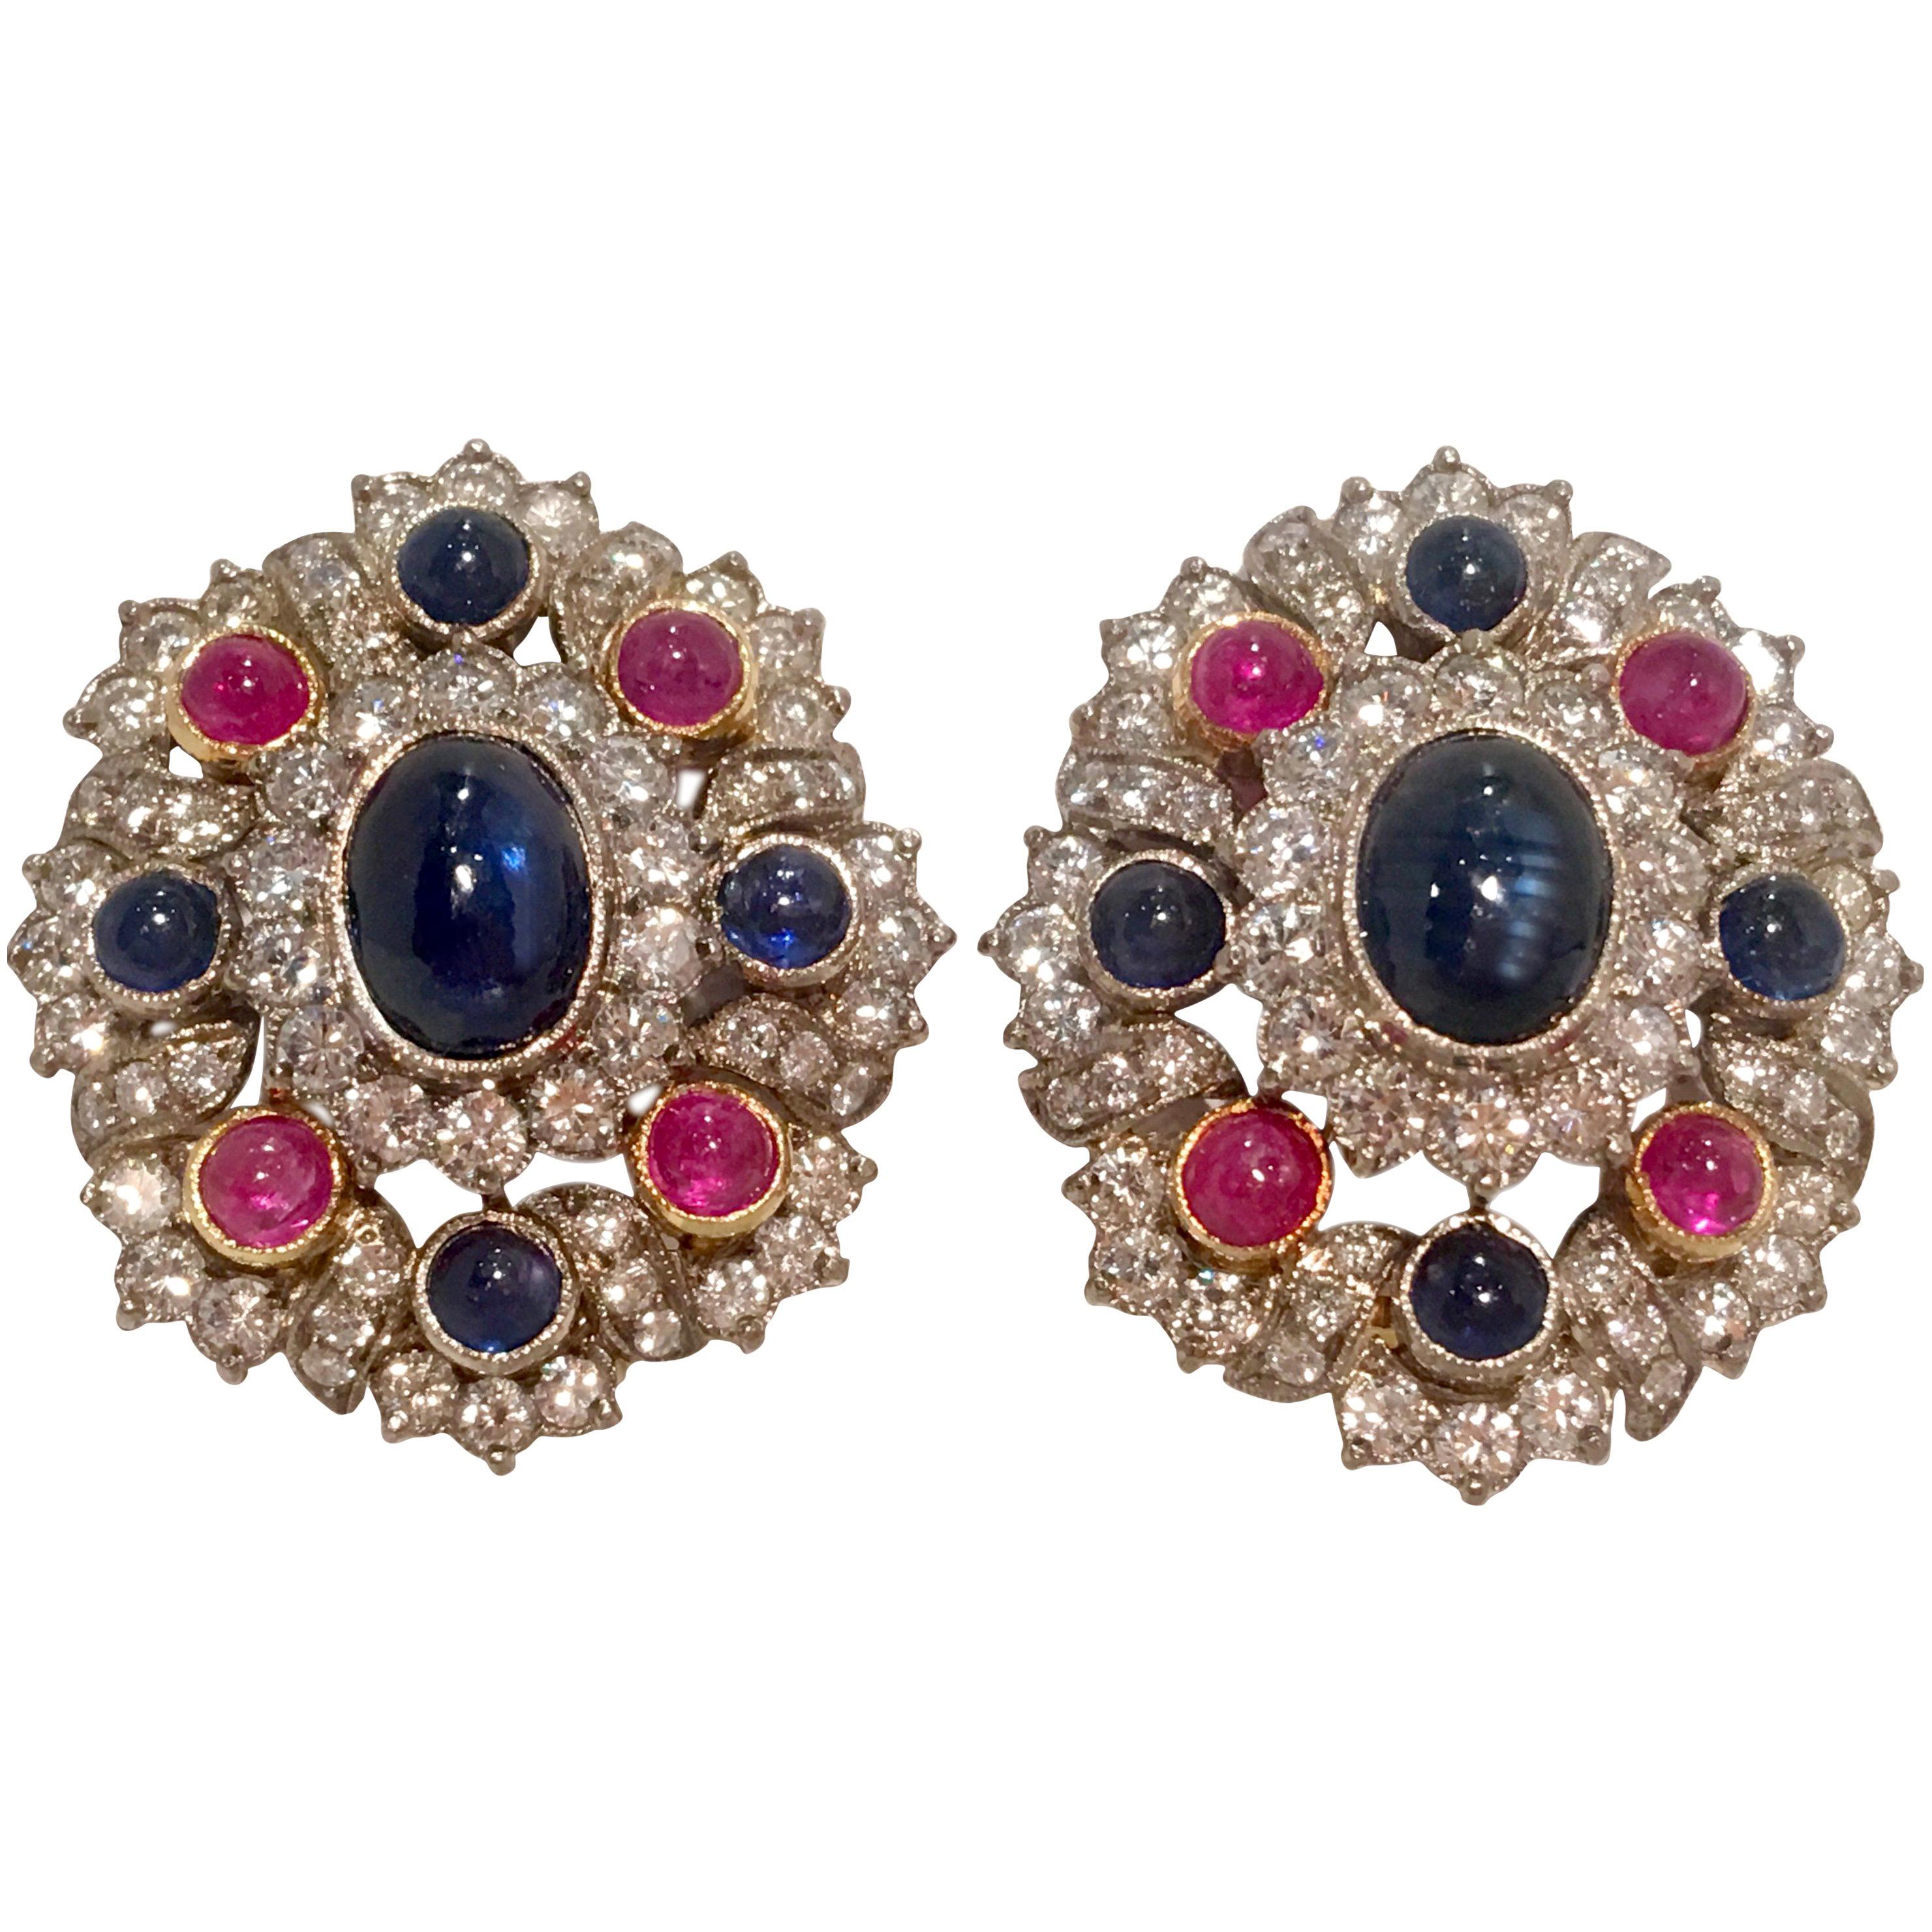 Élégantes boucles d'oreilles en or 18 carats avec rubis rouge de 12 carats, saphir bleu et diamants 